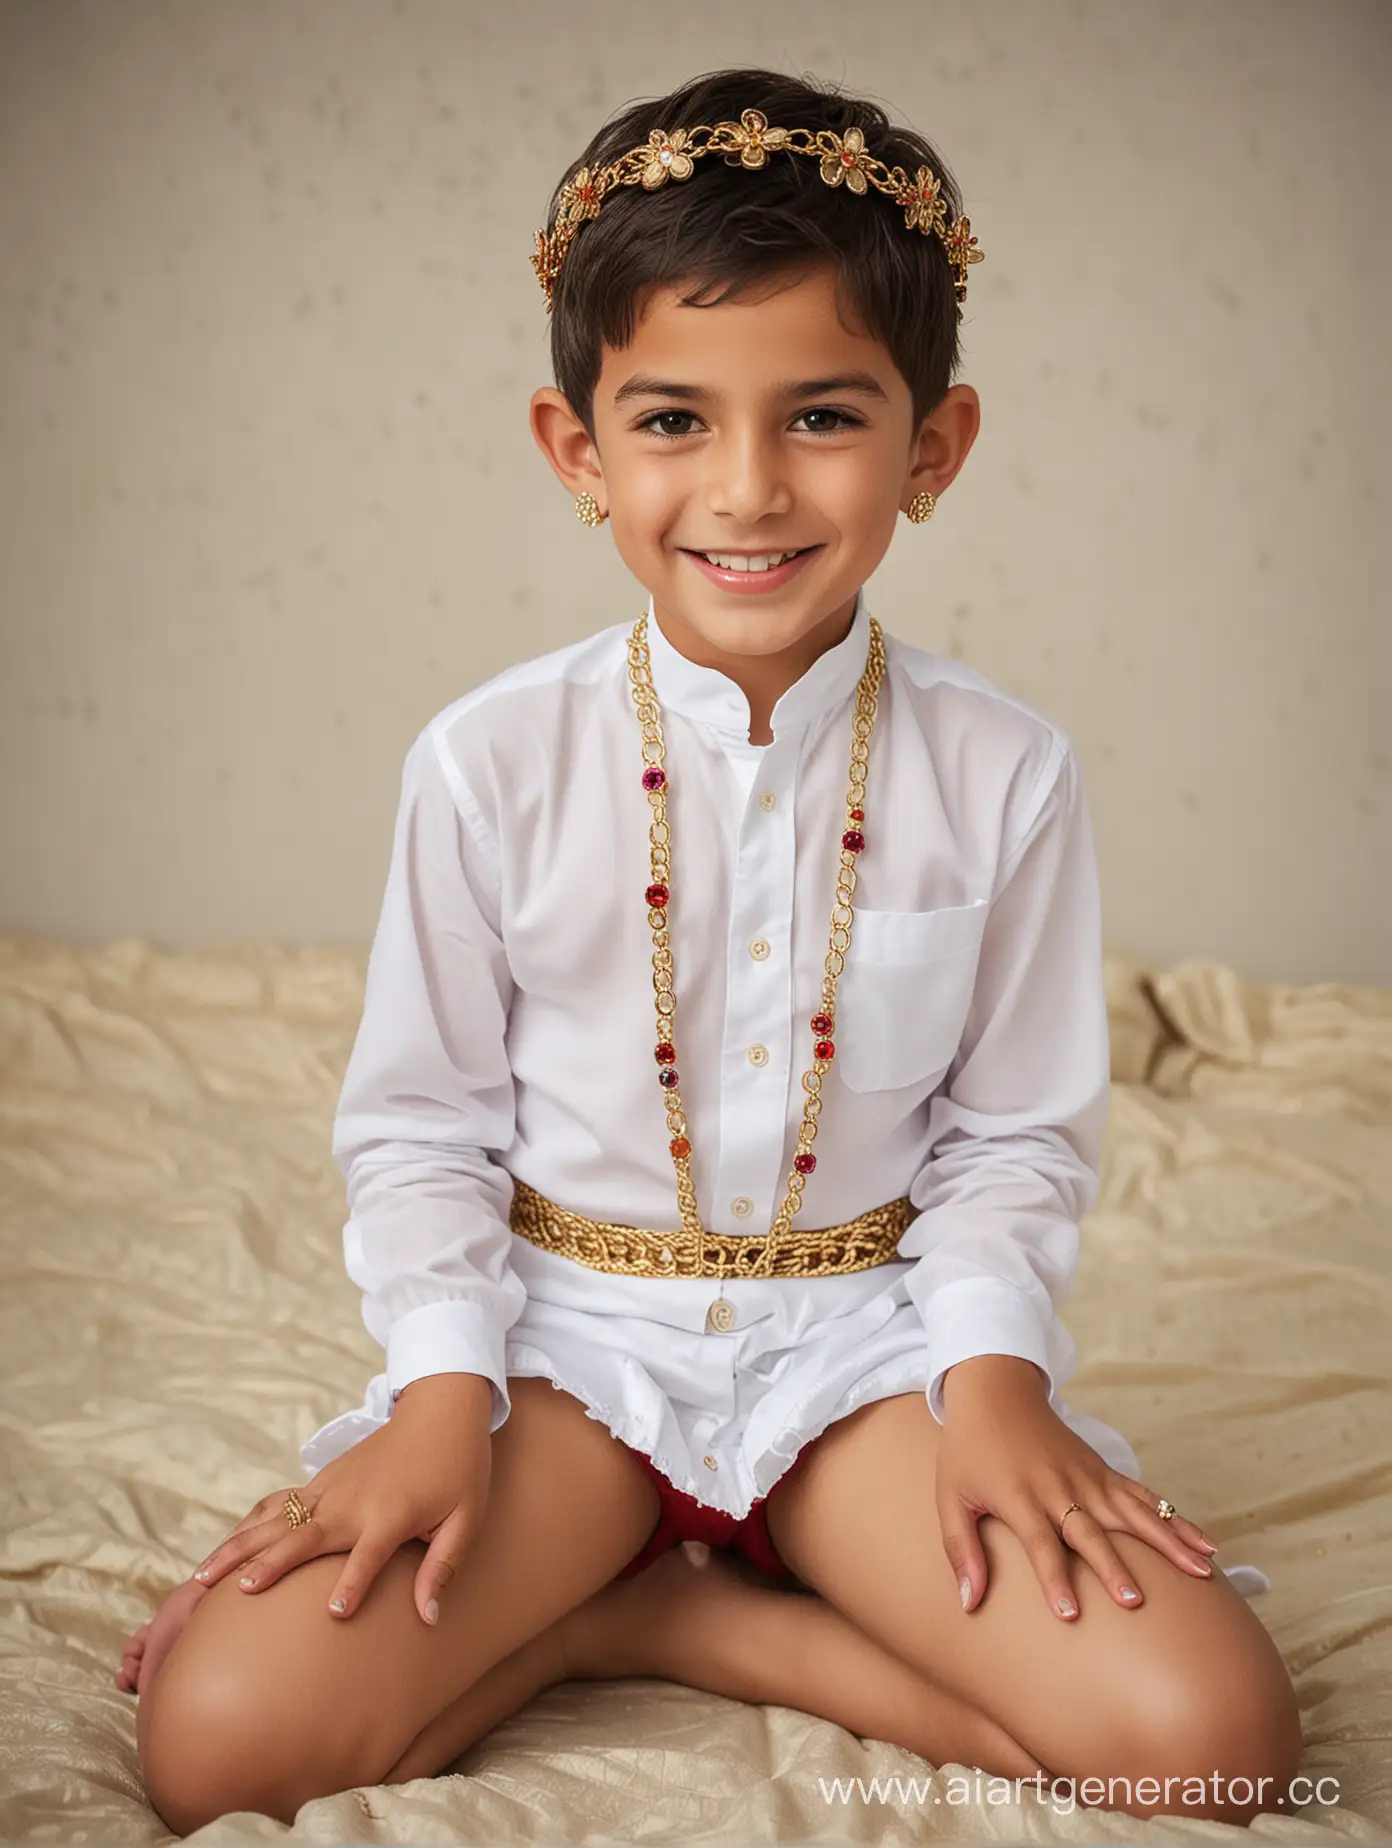 Joyful-Arab-Boy-in-Colorful-Wedding-Attire-on-Plush-Bed